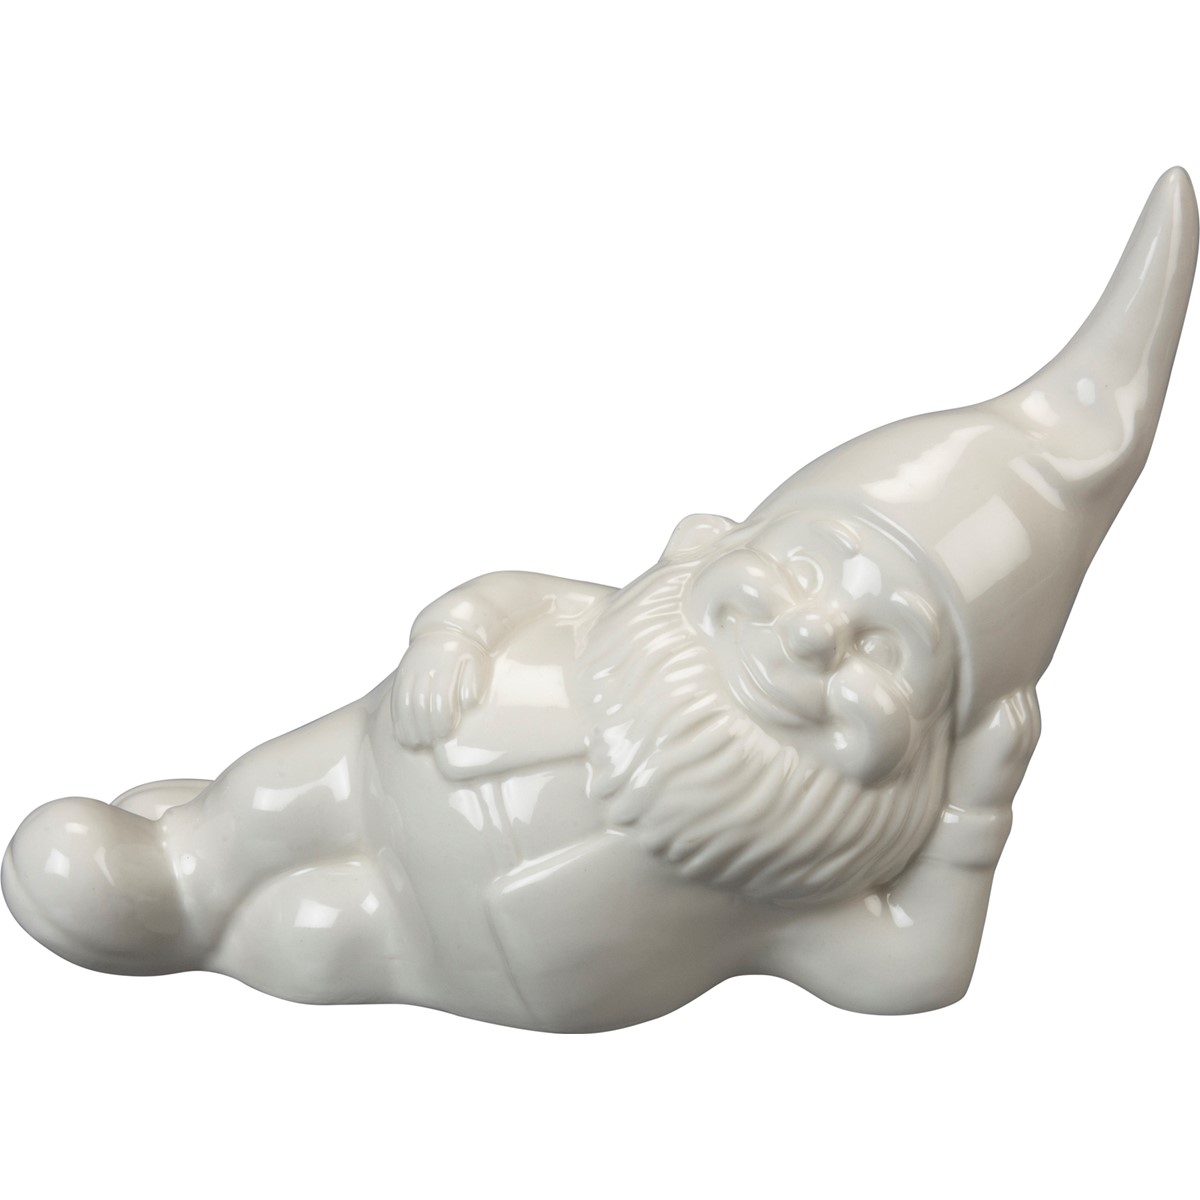 Lounging Gnome Figurine - Ceramic